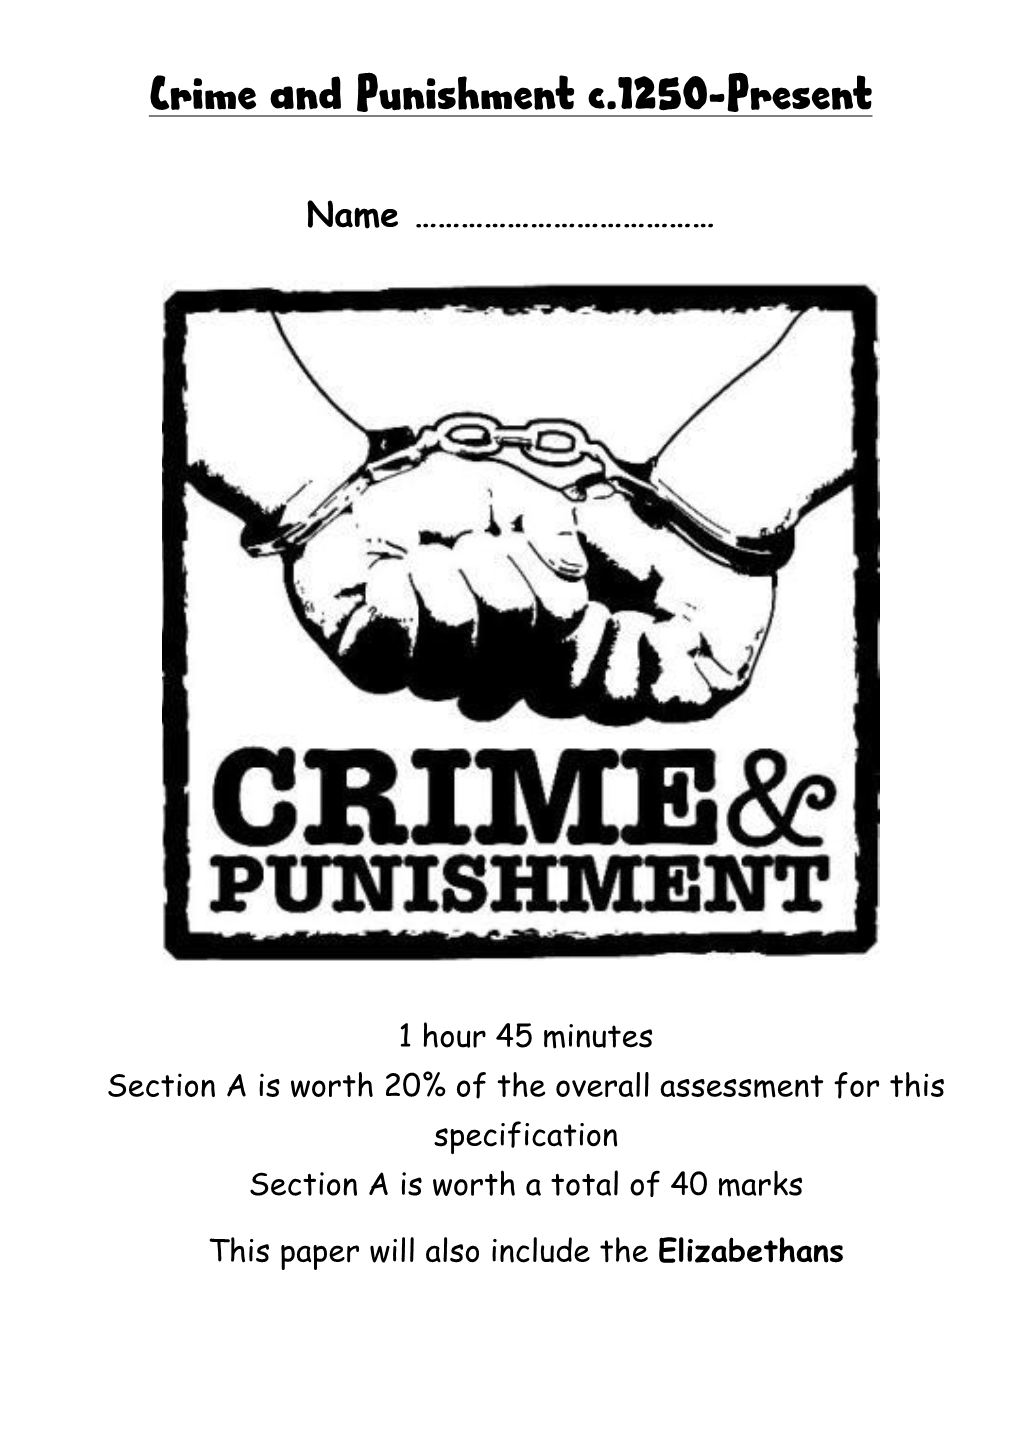 Crime and Punishment C.1250-Present